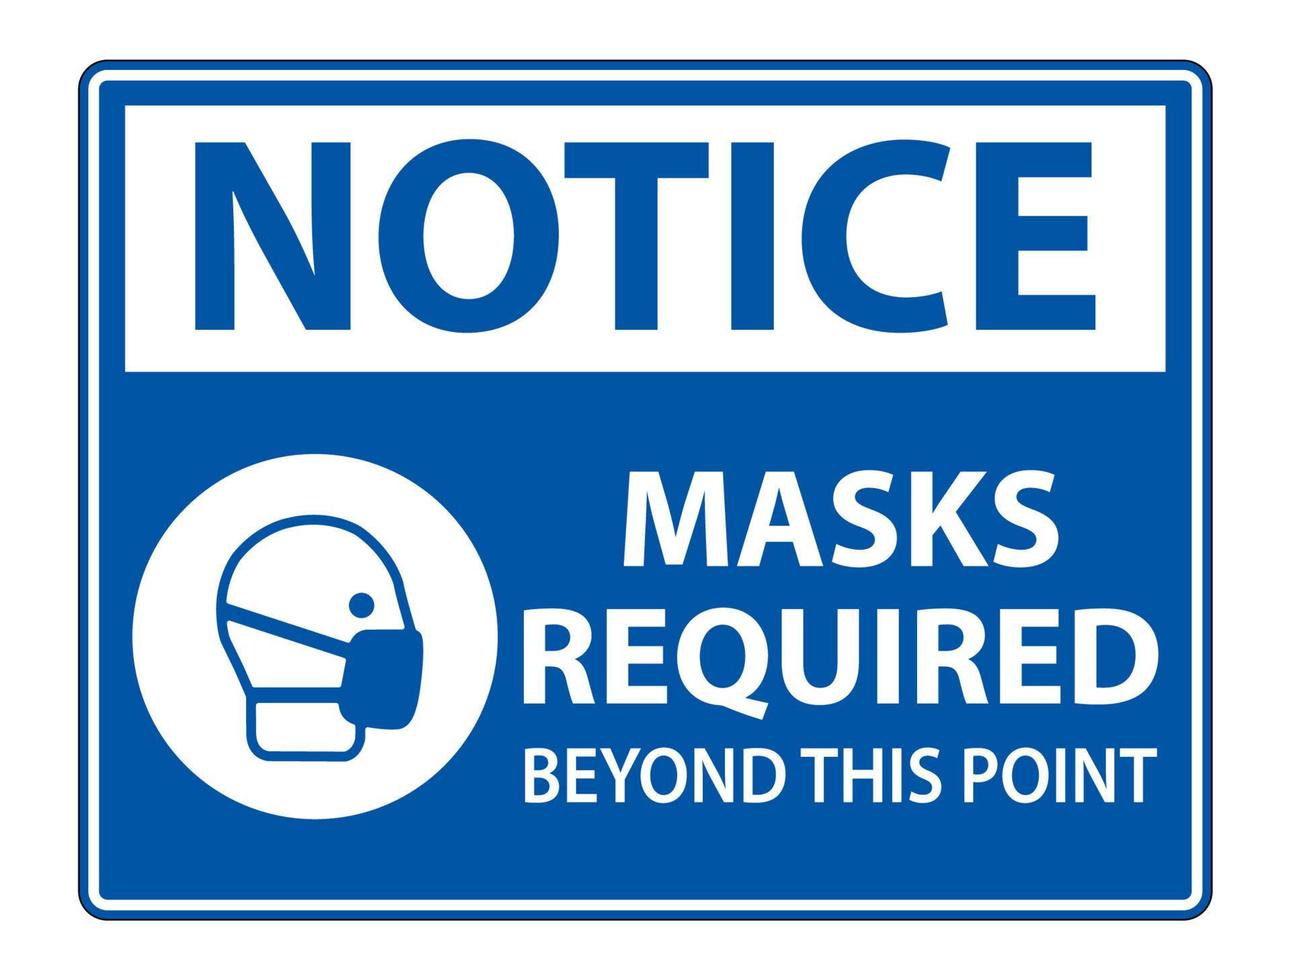 Aviso de máscaras necesarias más allá de este signo de punto aislado sobre fondo blanco, ilustración vectorial eps.10 vector